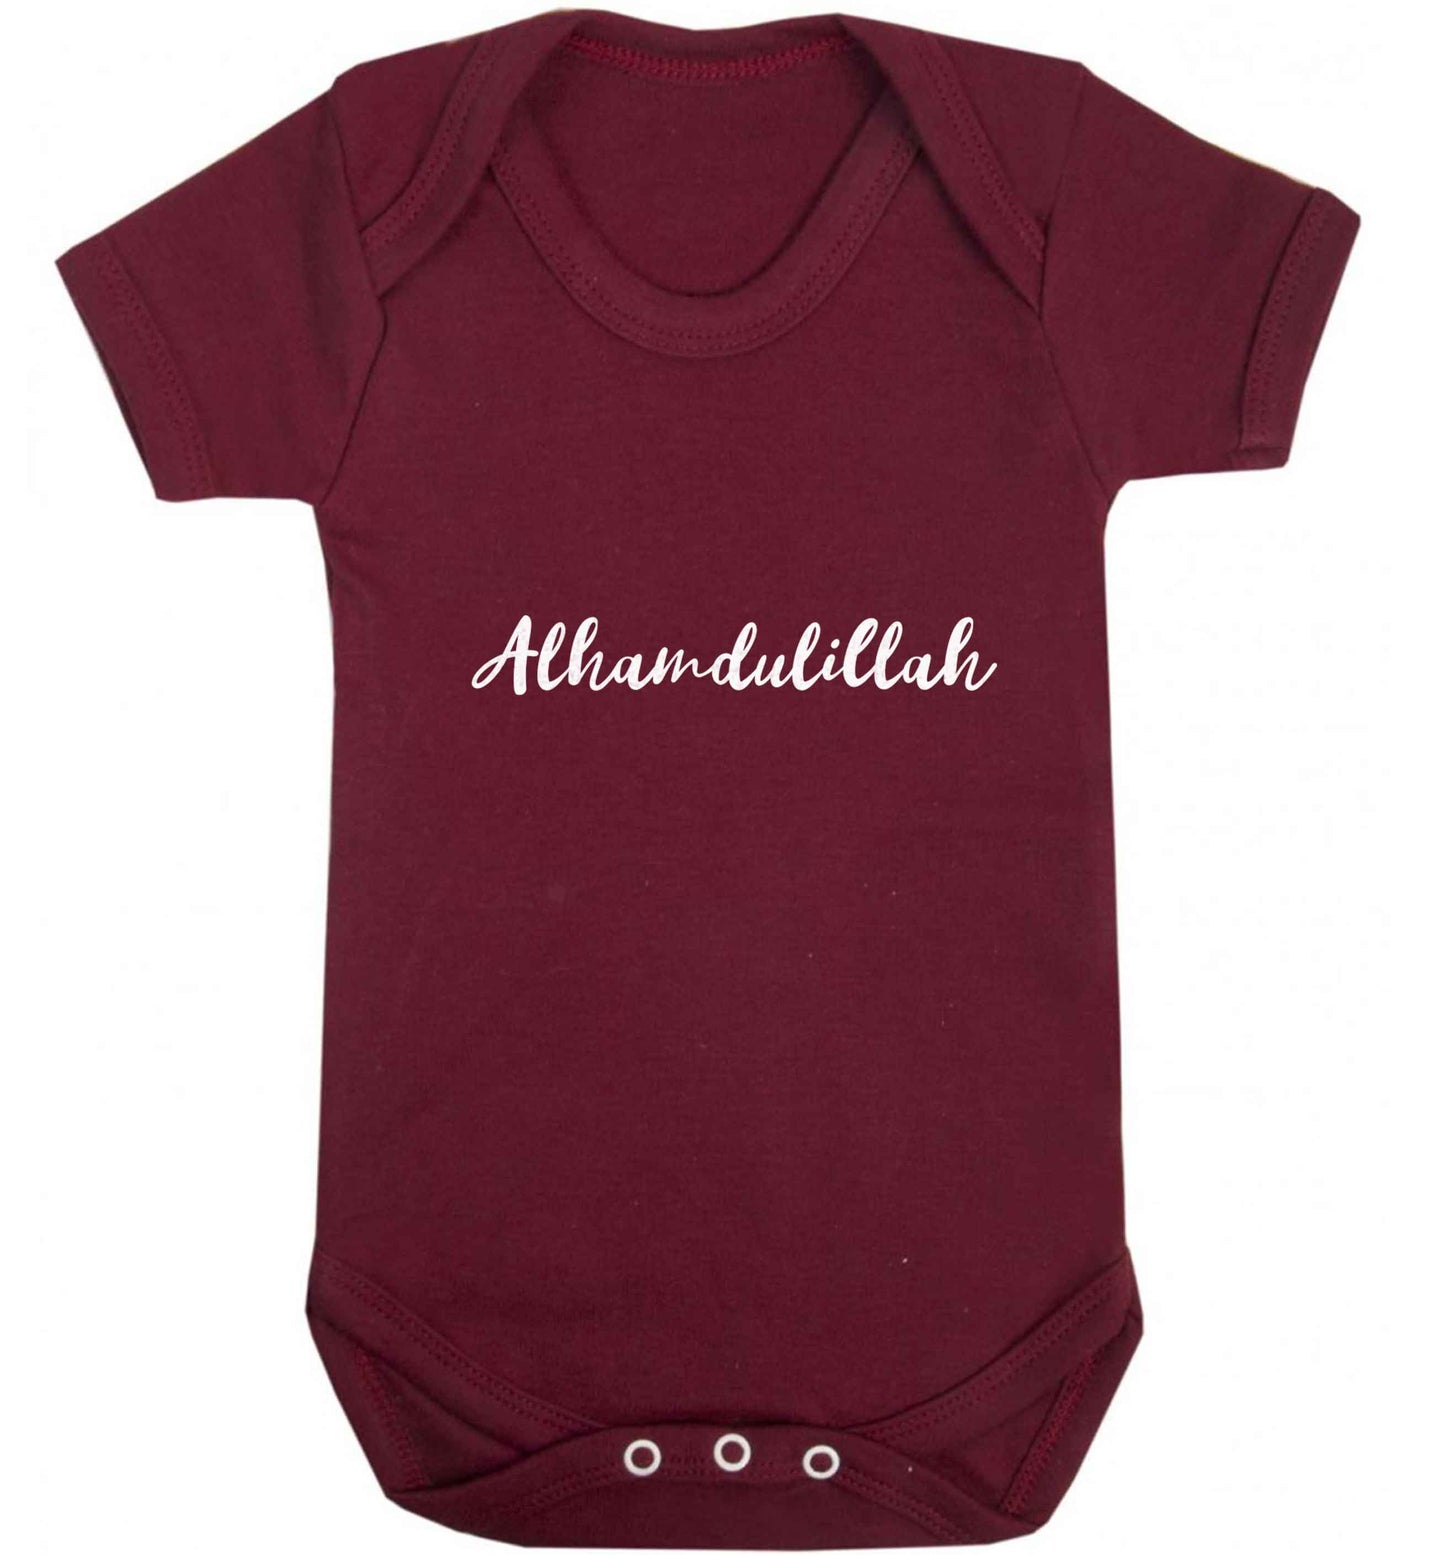 alhamdulillah baby vest maroon 18-24 months